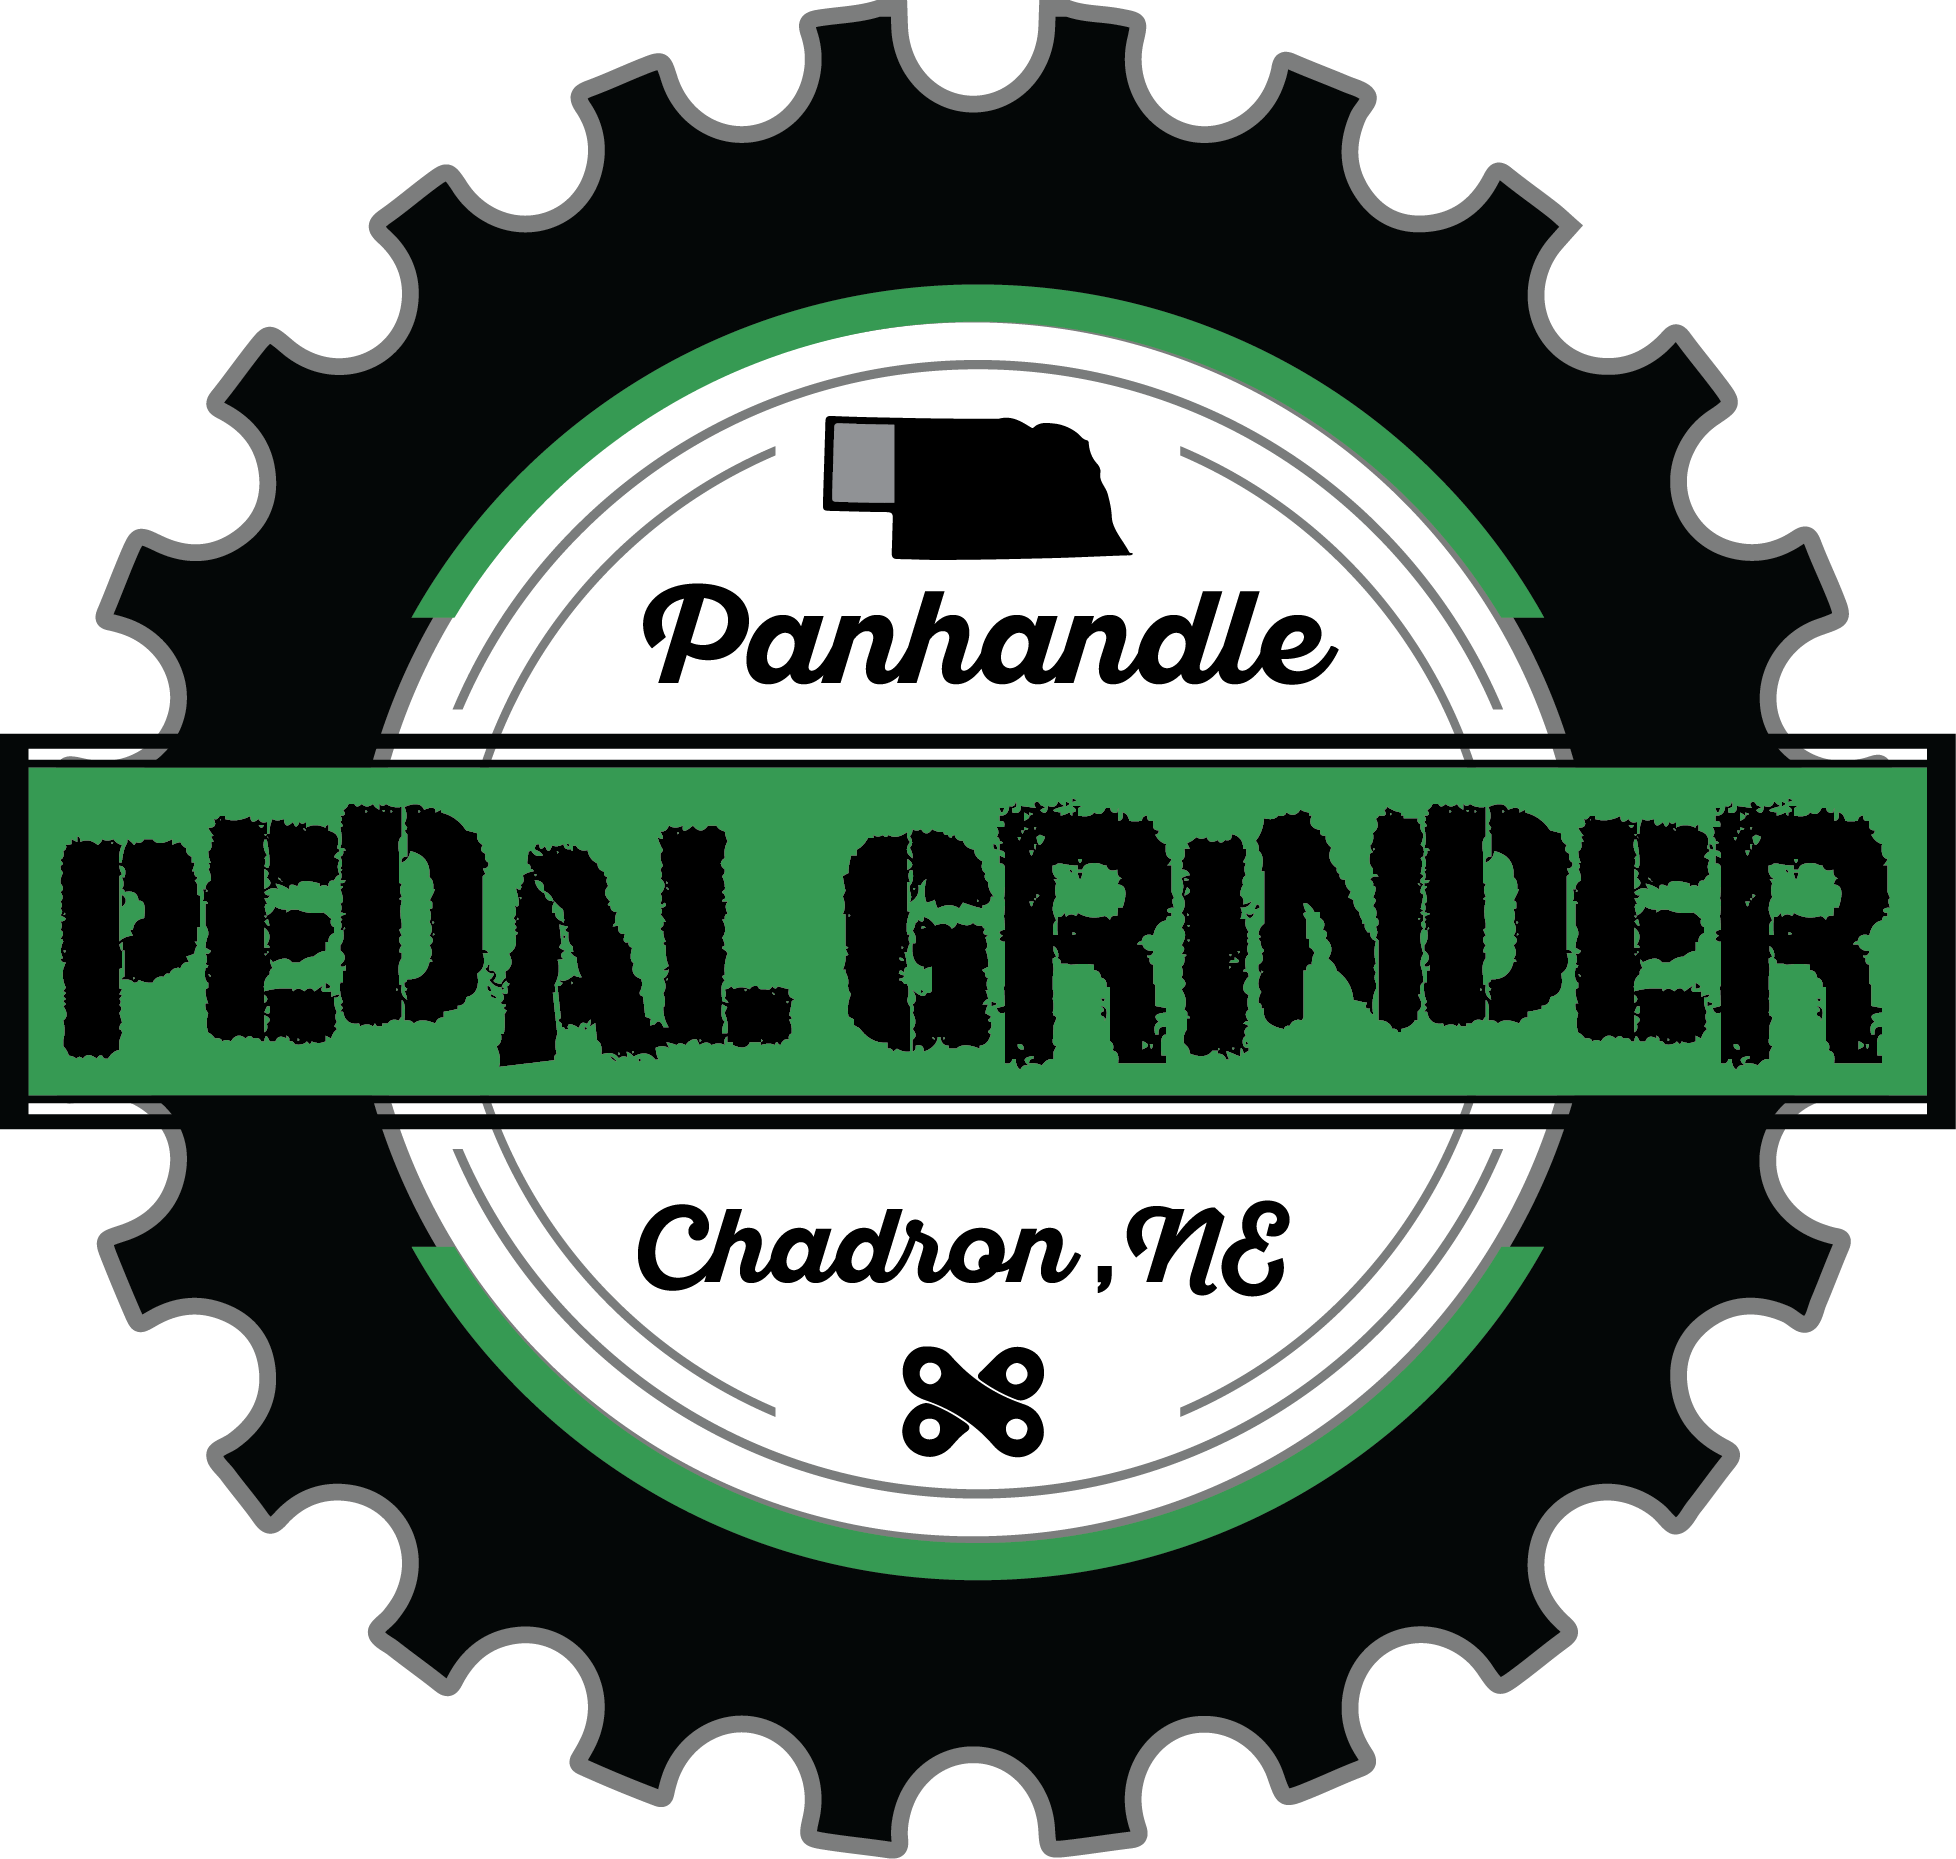 Grinder Logo - Panhandle Pedal Grinder Logo